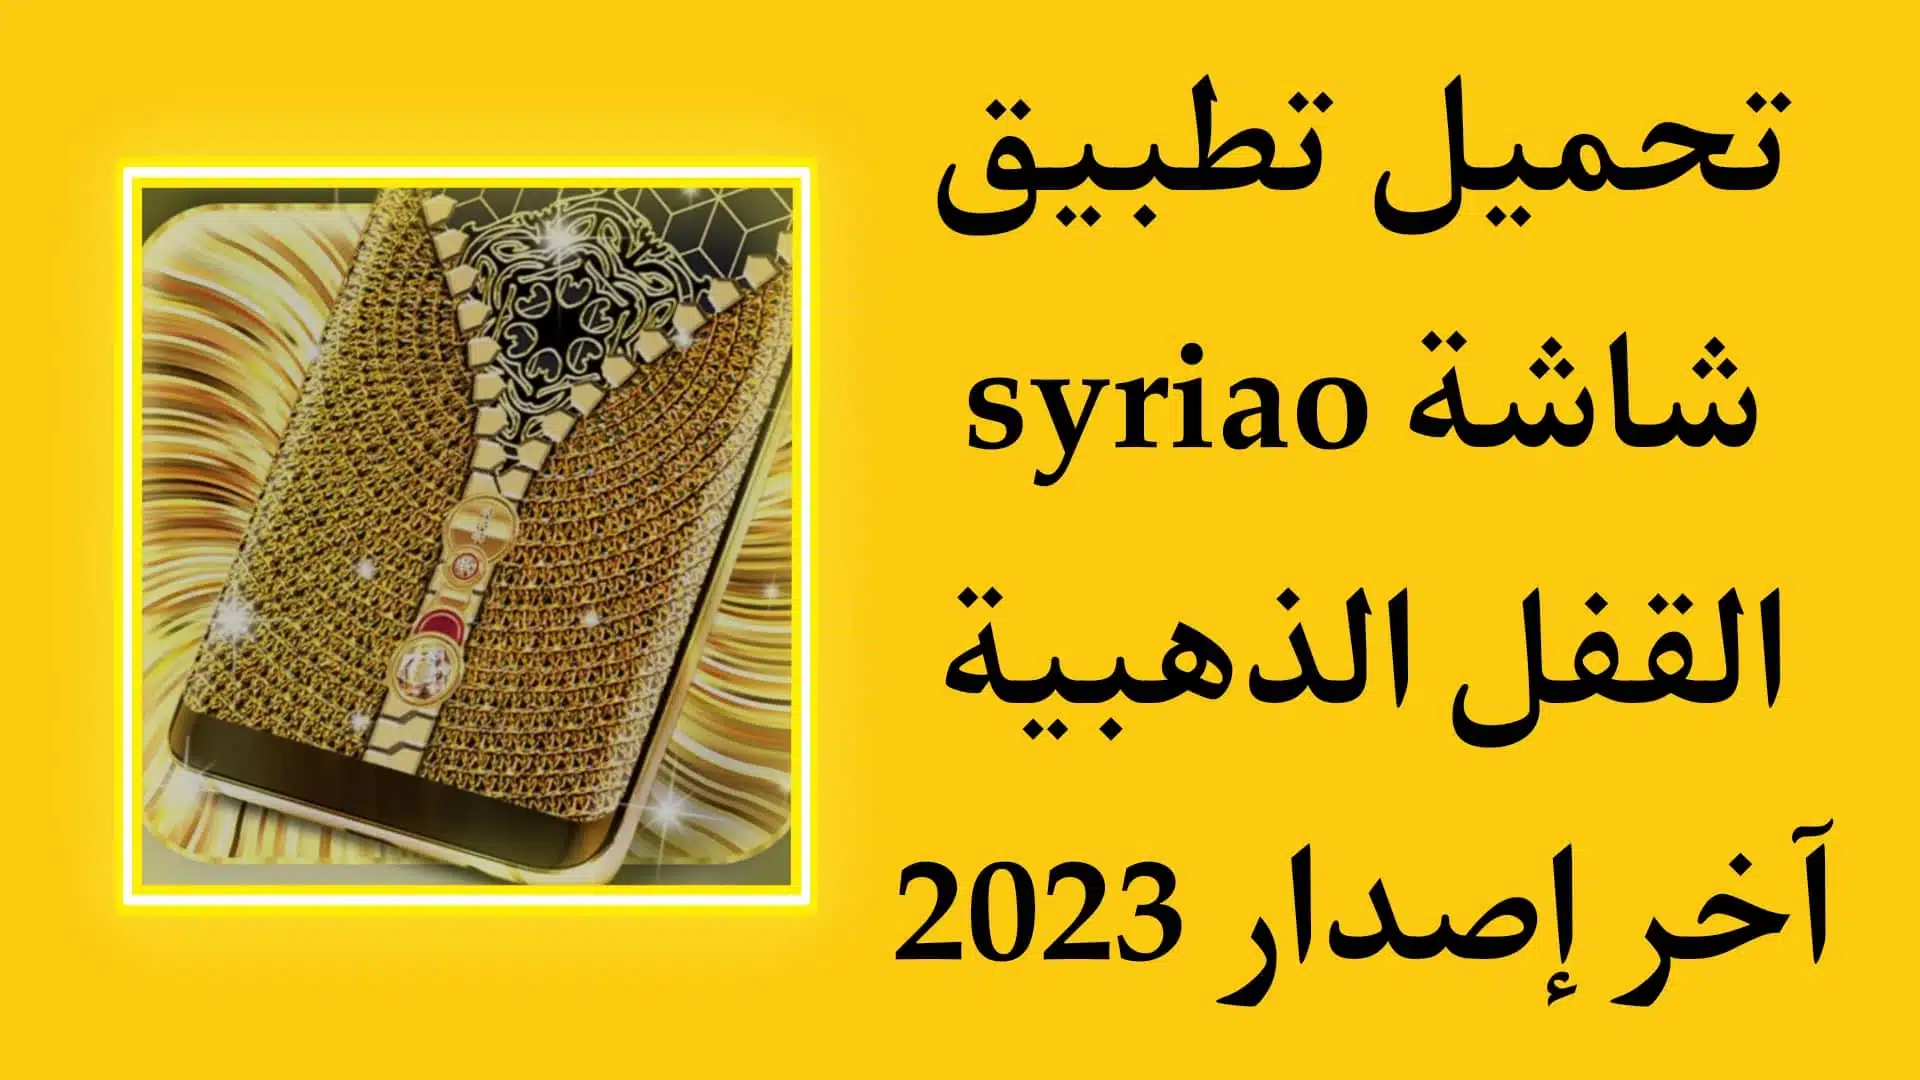 تحميل تطبيق syriao اخر اصدار للاندرويد قفل الشاشة الذهبي